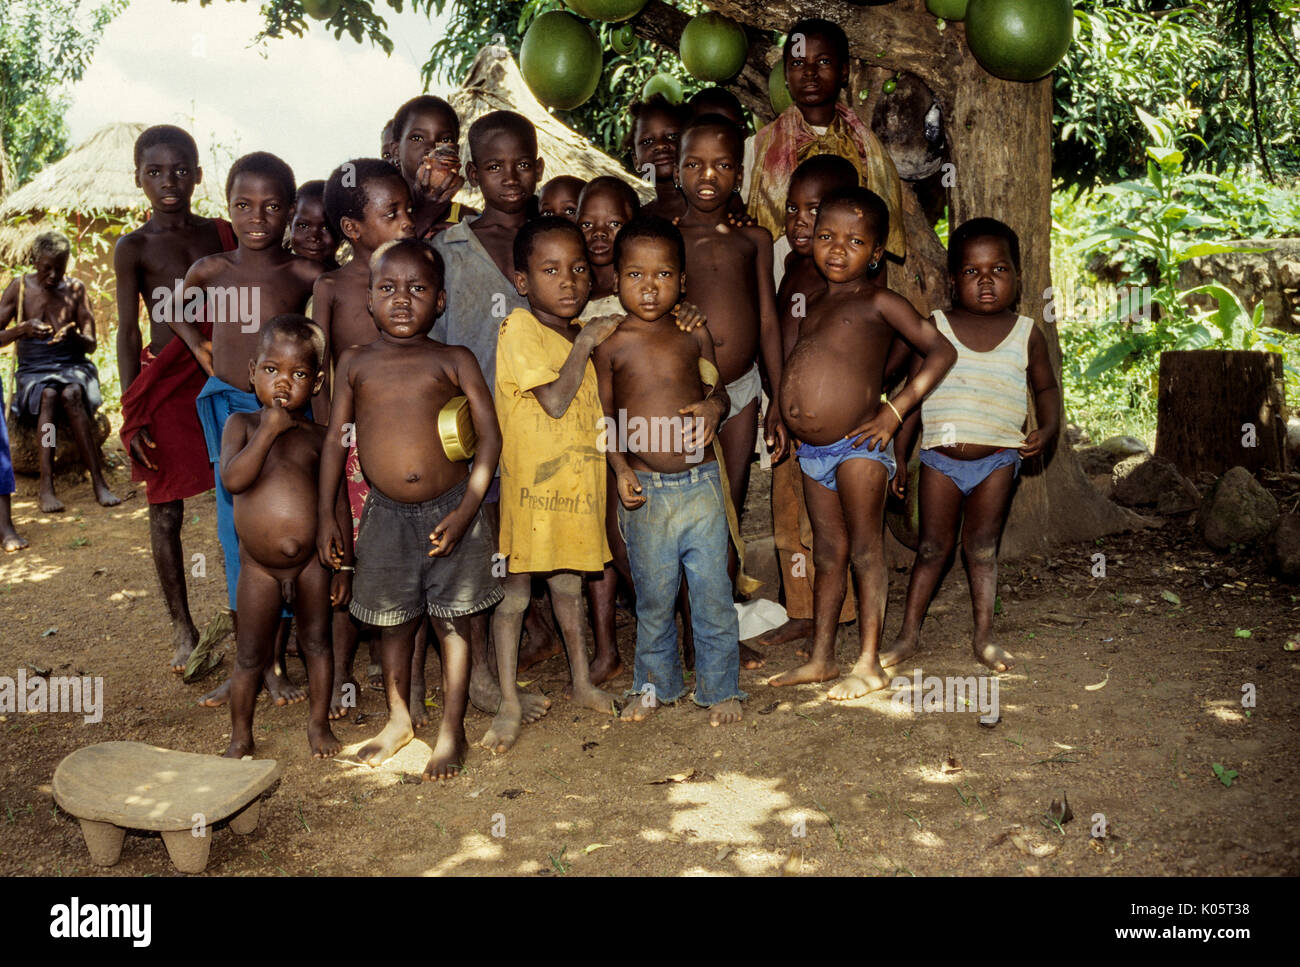 Côte d'Ivoire, Elfenbeinküste, Tabakala, West Afrika. Village Boys, die Anzeichen von Unterernährung, Darmparasiten, mögliche Kwashiorkor. Stockfoto